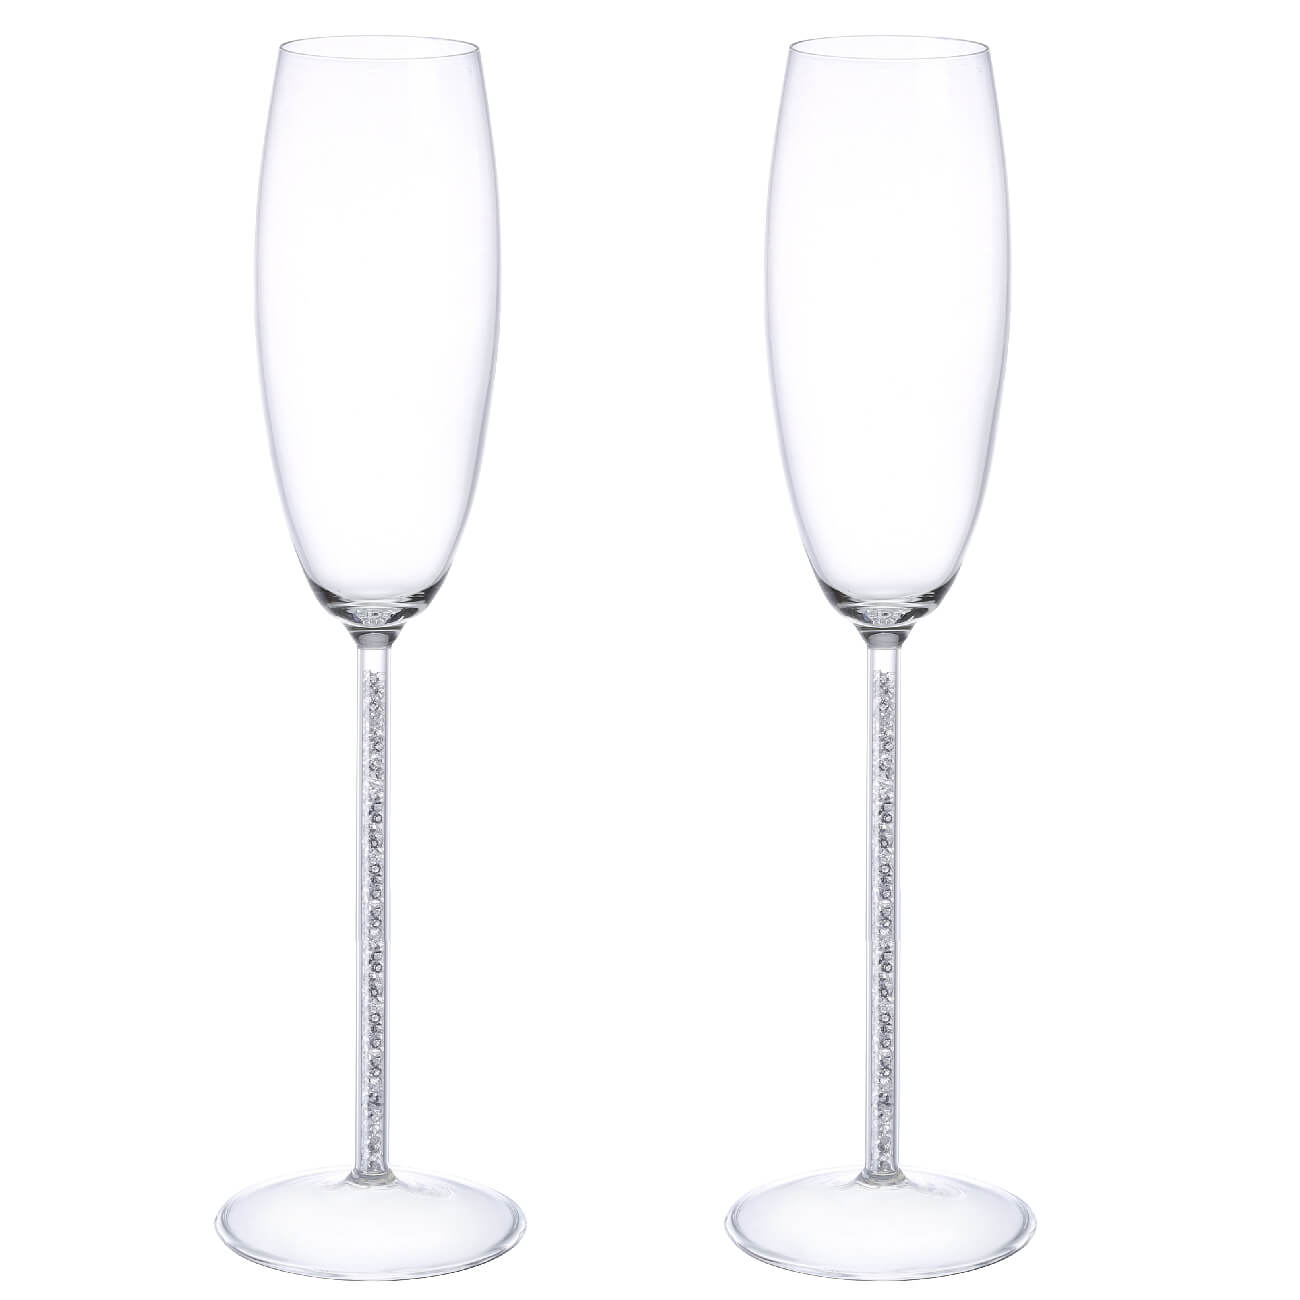 Kuchenland Бокал для шампанского, 180 мл, 2 шт, стекло/стразы, Crystal decor стразы для декора 2 мм разно ный